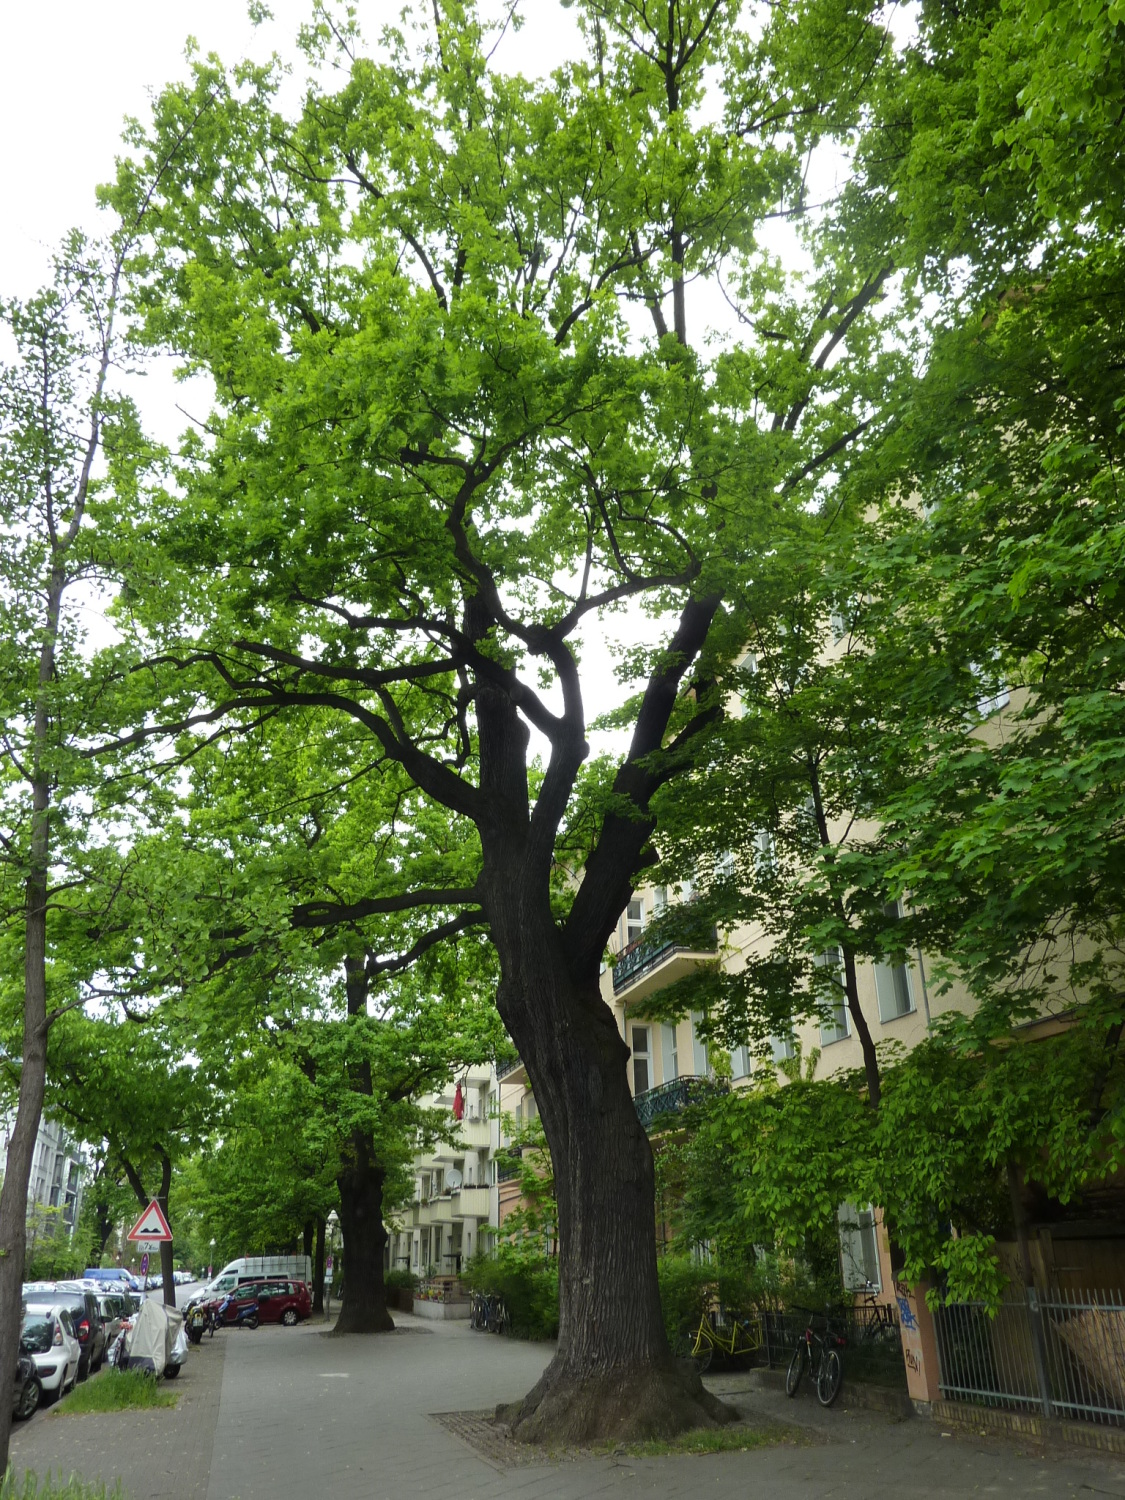 Stieleiche (Quercus robur) in Friedrichshain-Kreuzberg